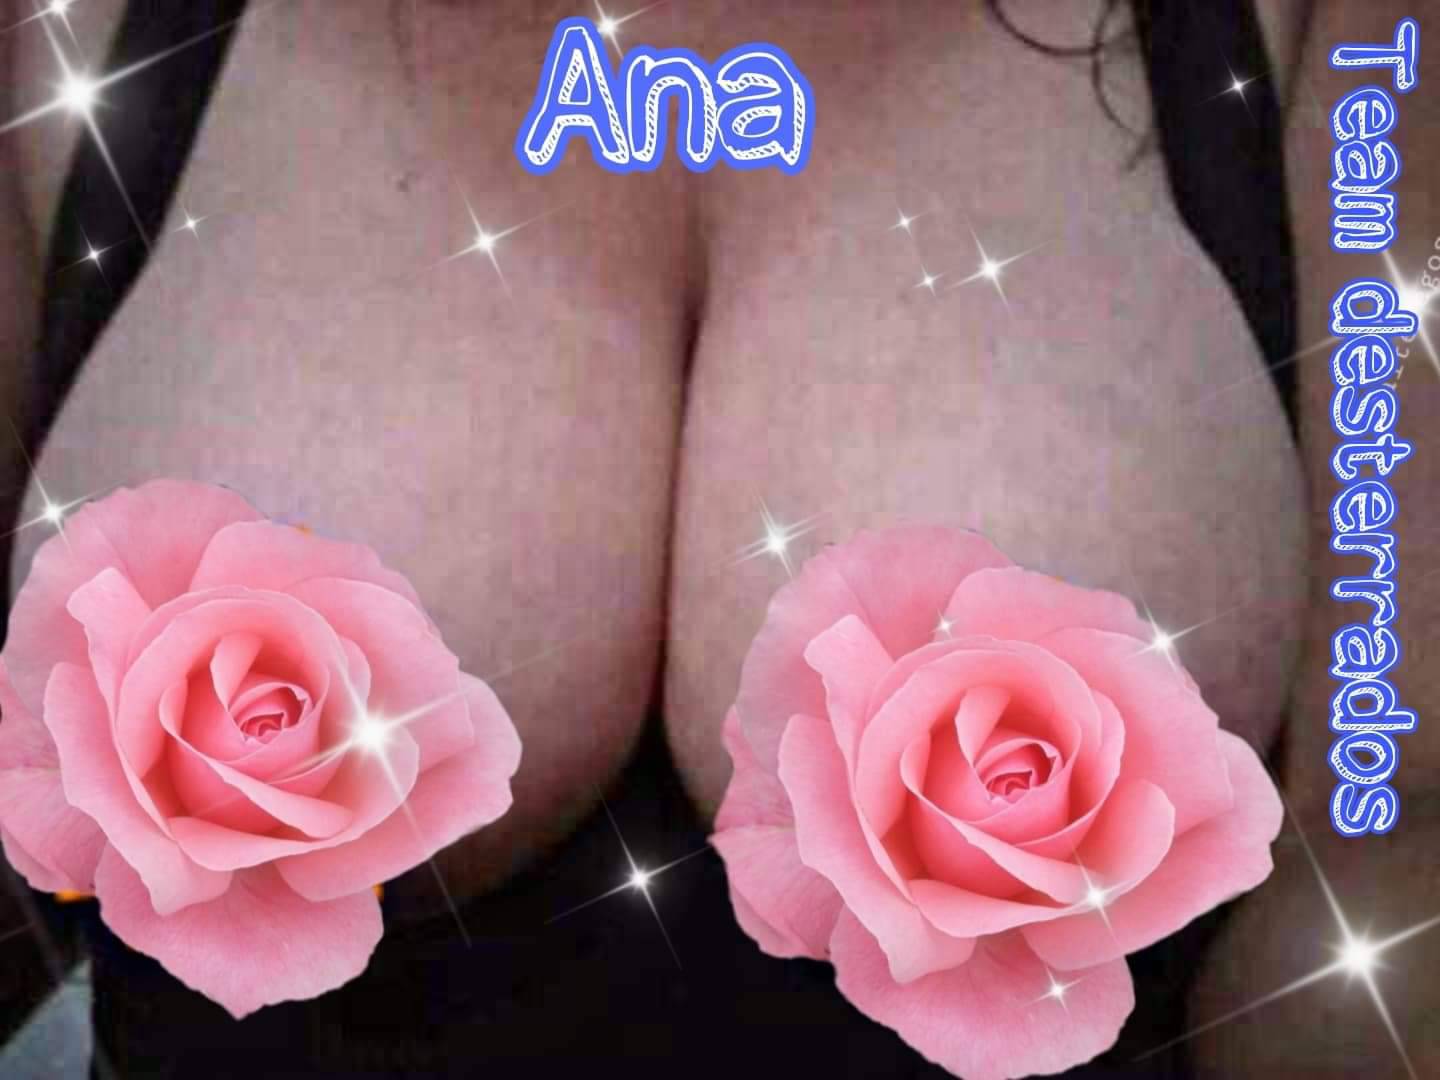 Ana Acosta